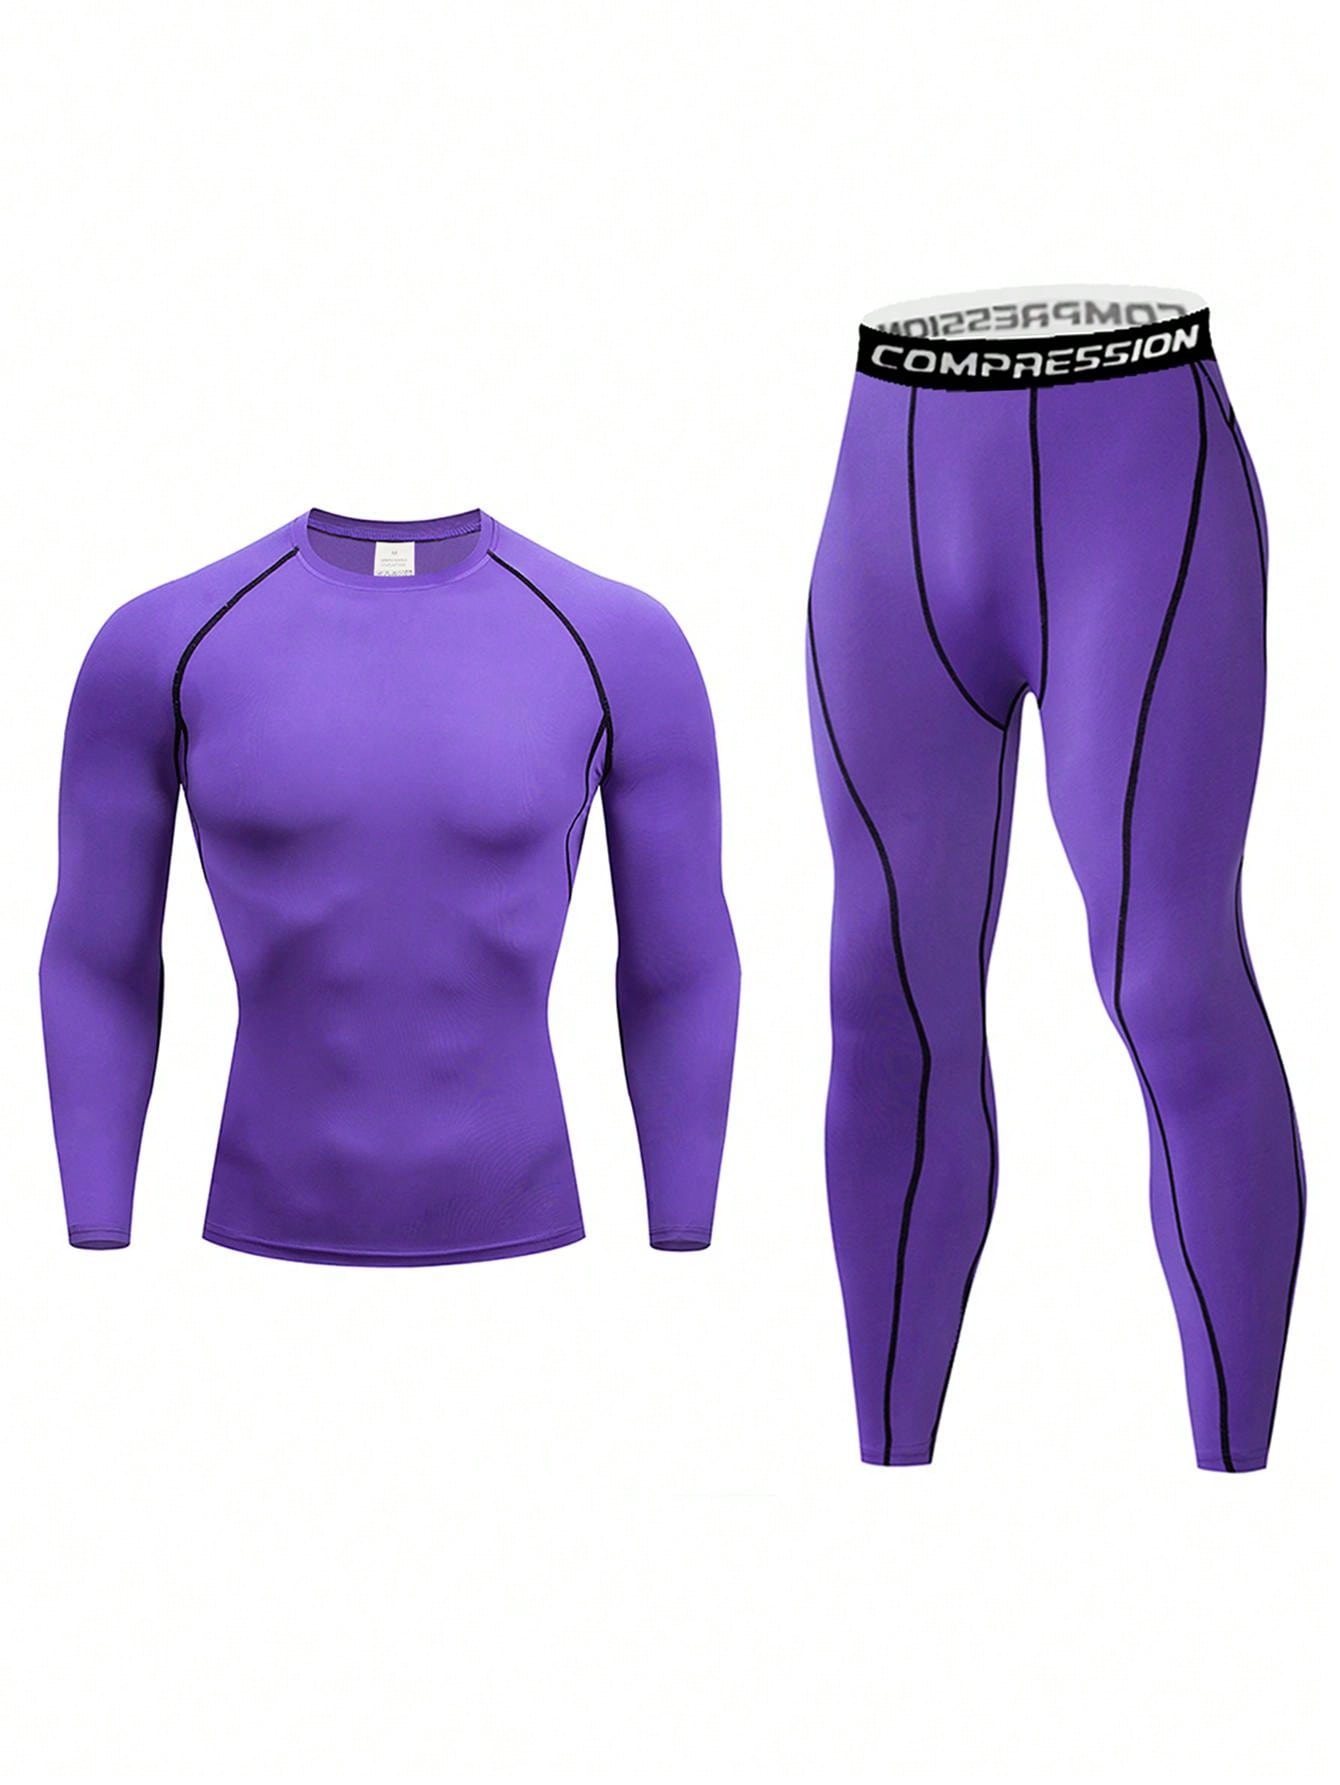 Мужской компрессионный топ с длинными рукавами и длинные брюки для фитнеса и бега, фиолетовый